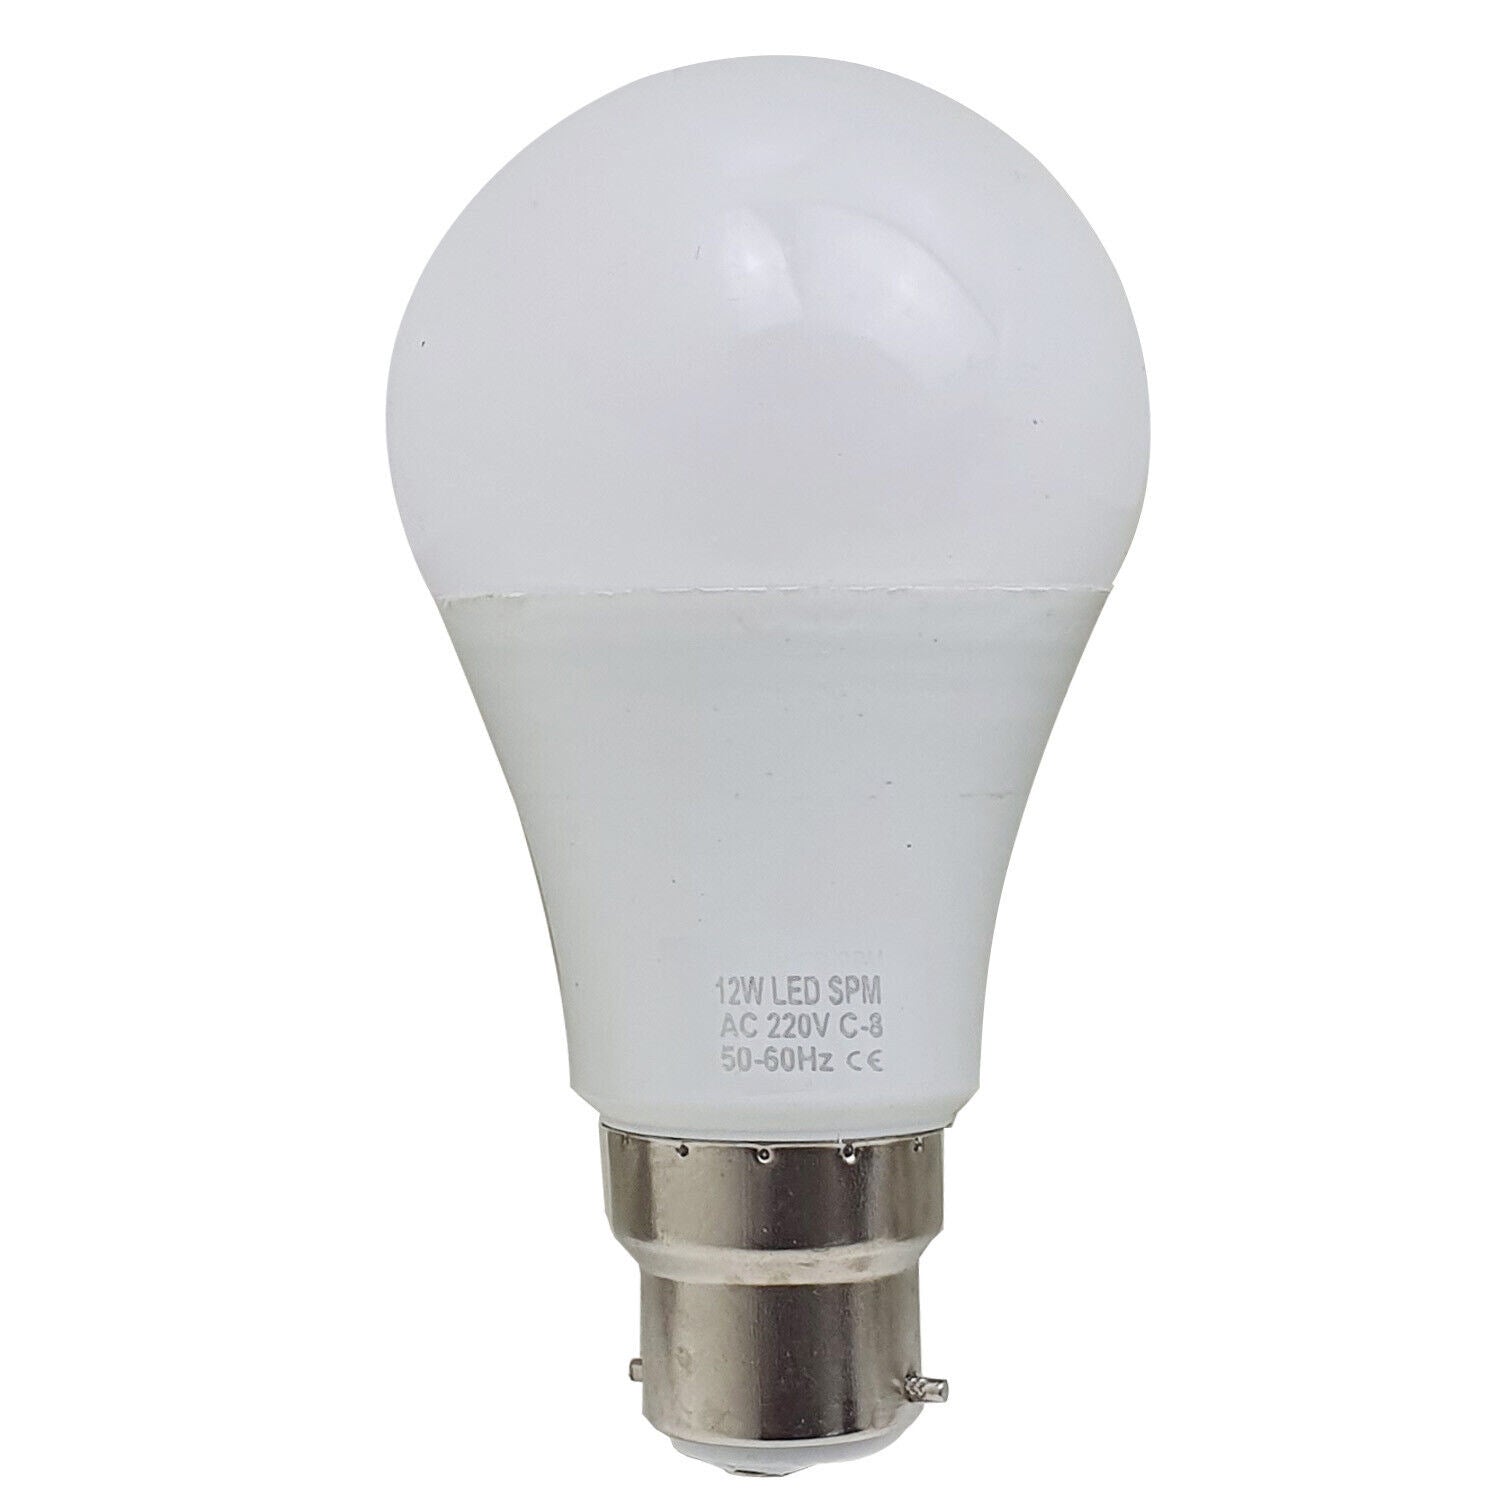 B22 12W energiesparende warmweiße LED-Glühbirnen A60 B22 nicht dimmbare Schraubbirnen